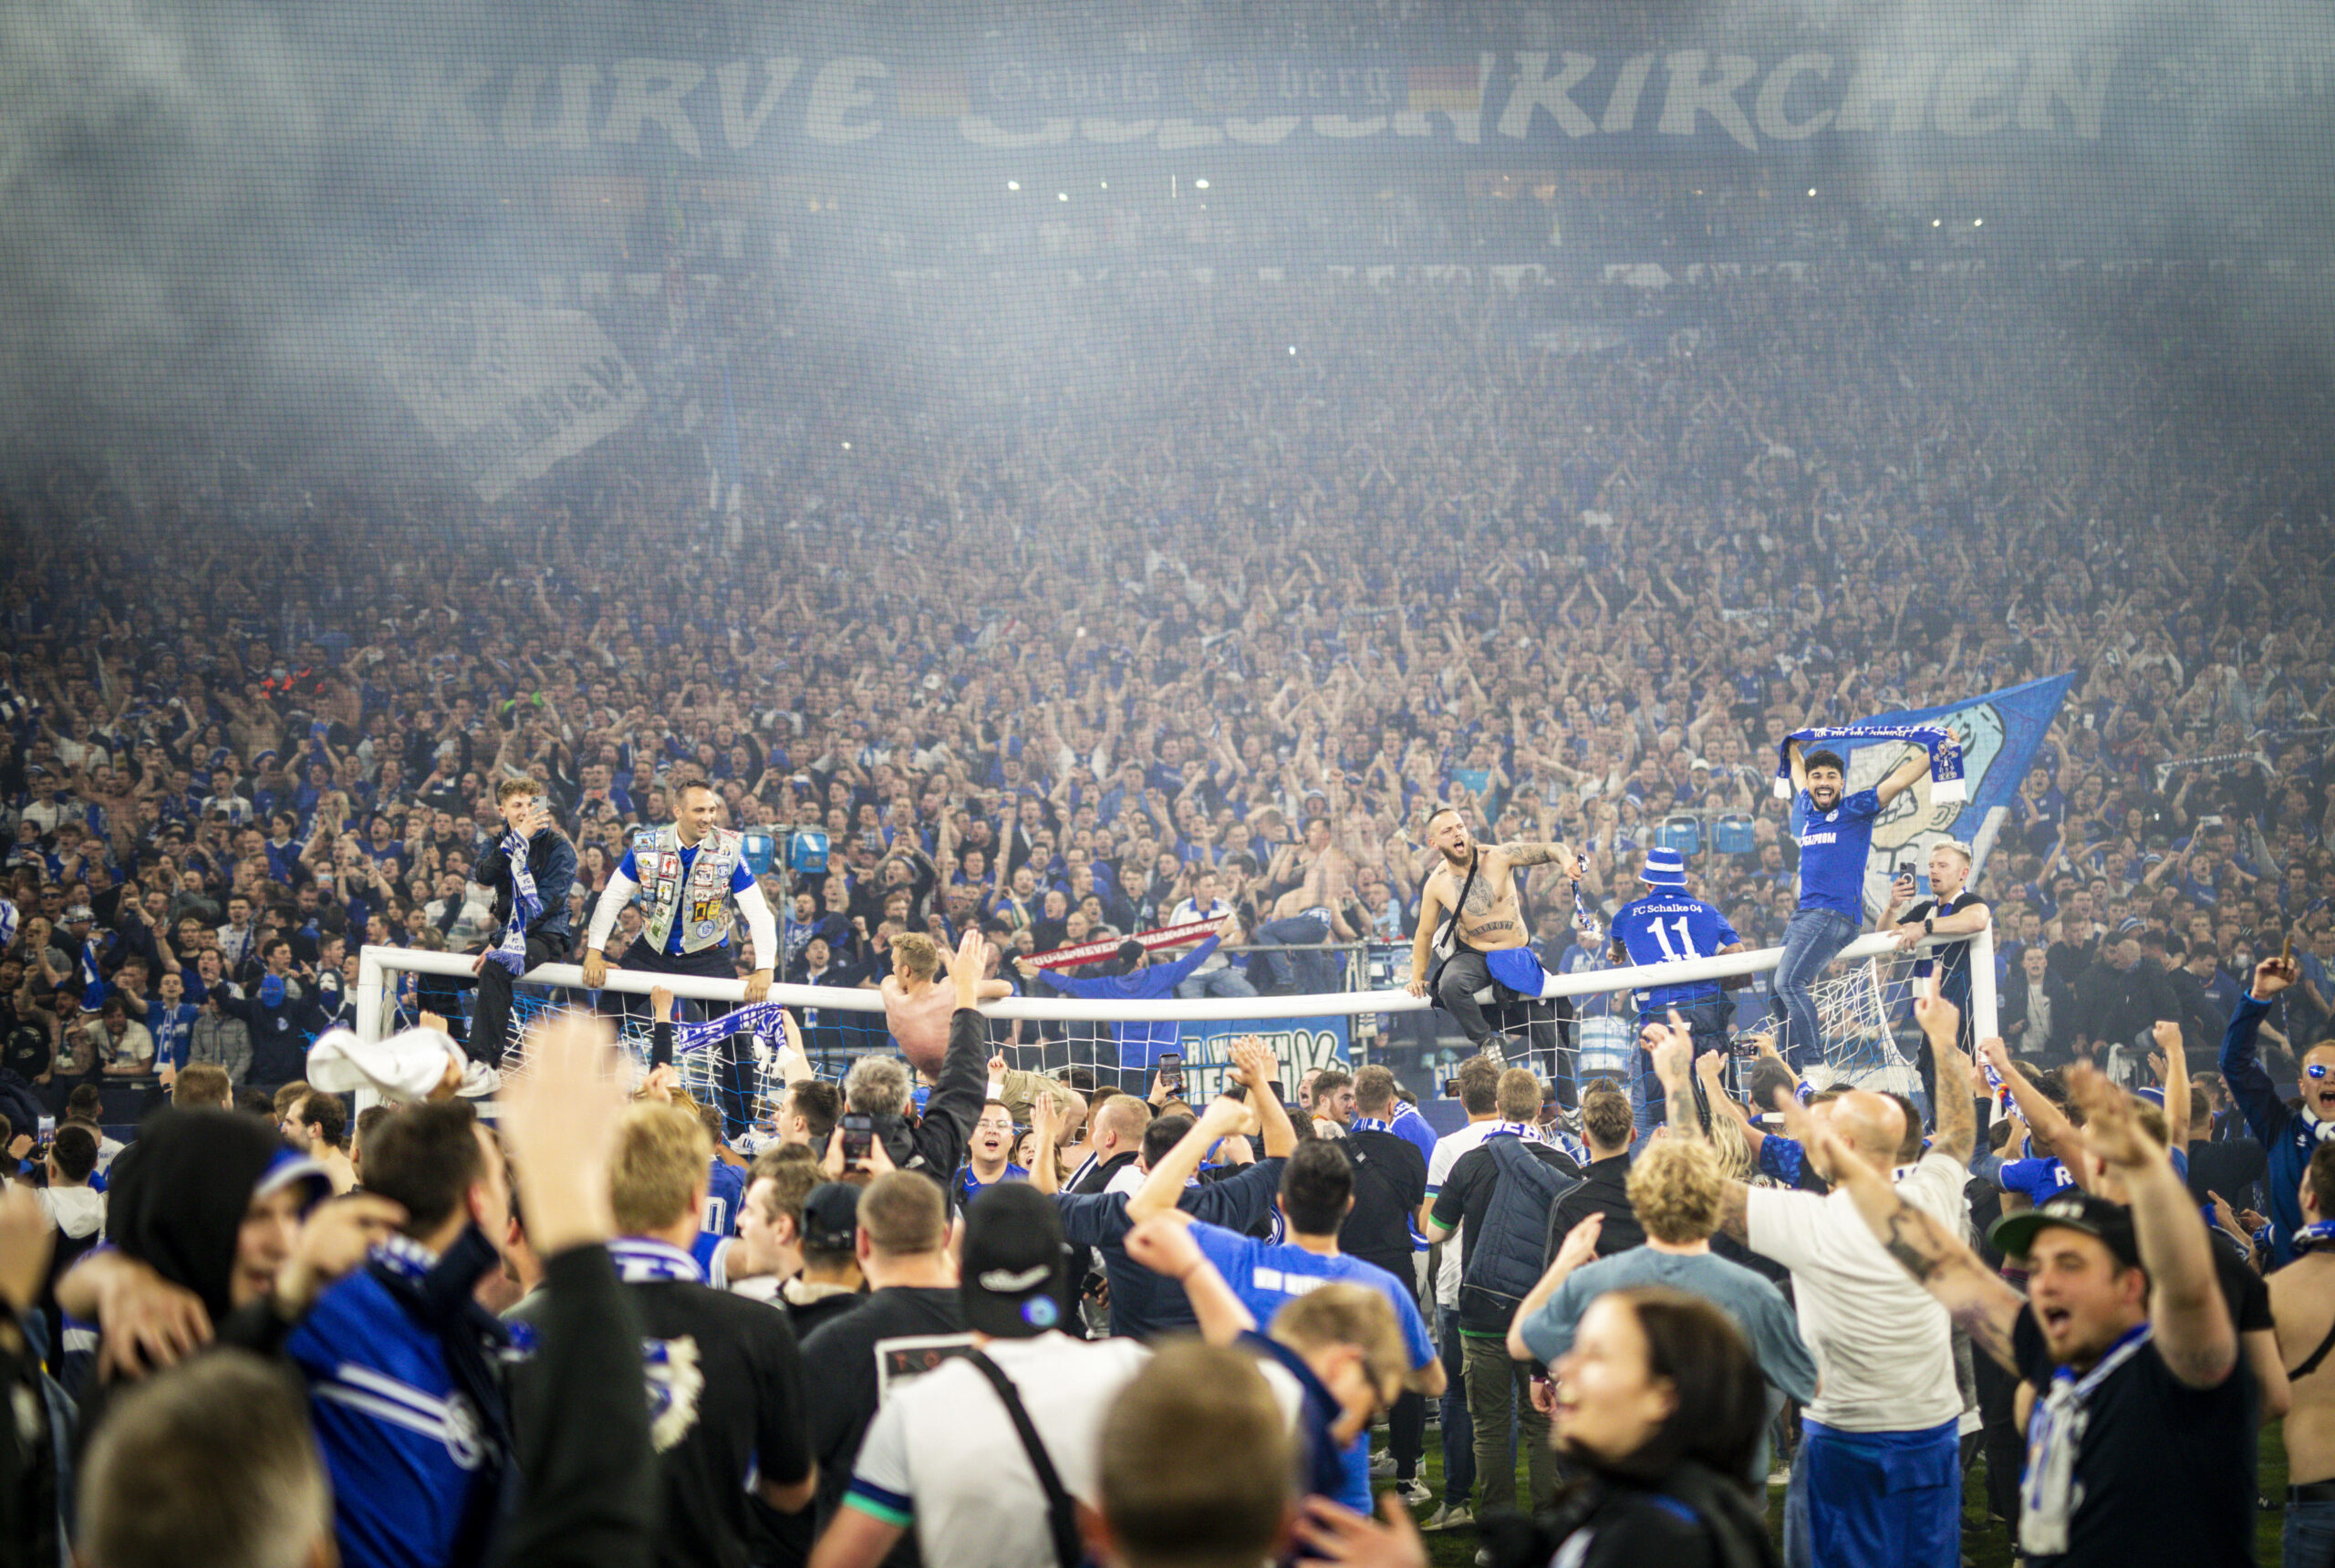 Hunderte Schalke-Fans strömten nach dem Spiel auf das Feld, wobei es bei Einigen zu Verletzungen kam